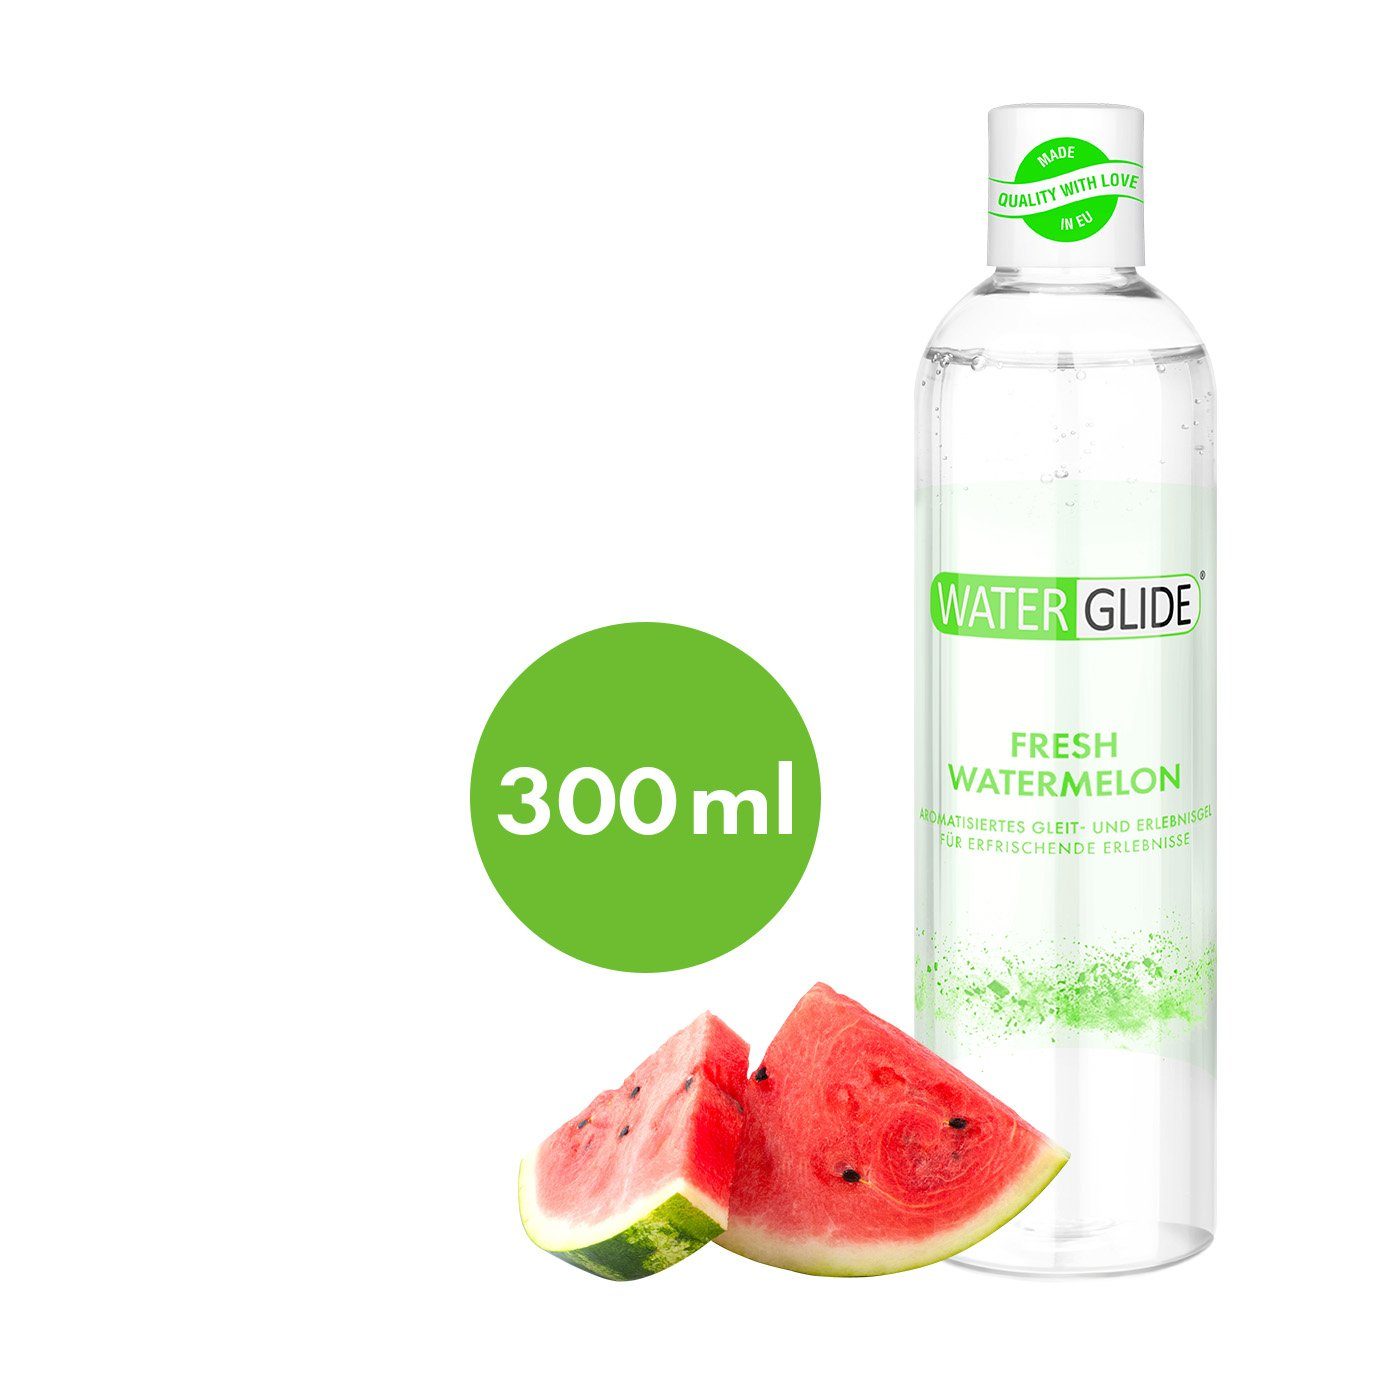 300ml, Stimulationsgel Erlebnisgel, Watermelon', 'Fresh EIS EIS Waterglide 0-tlg. Gleit-&